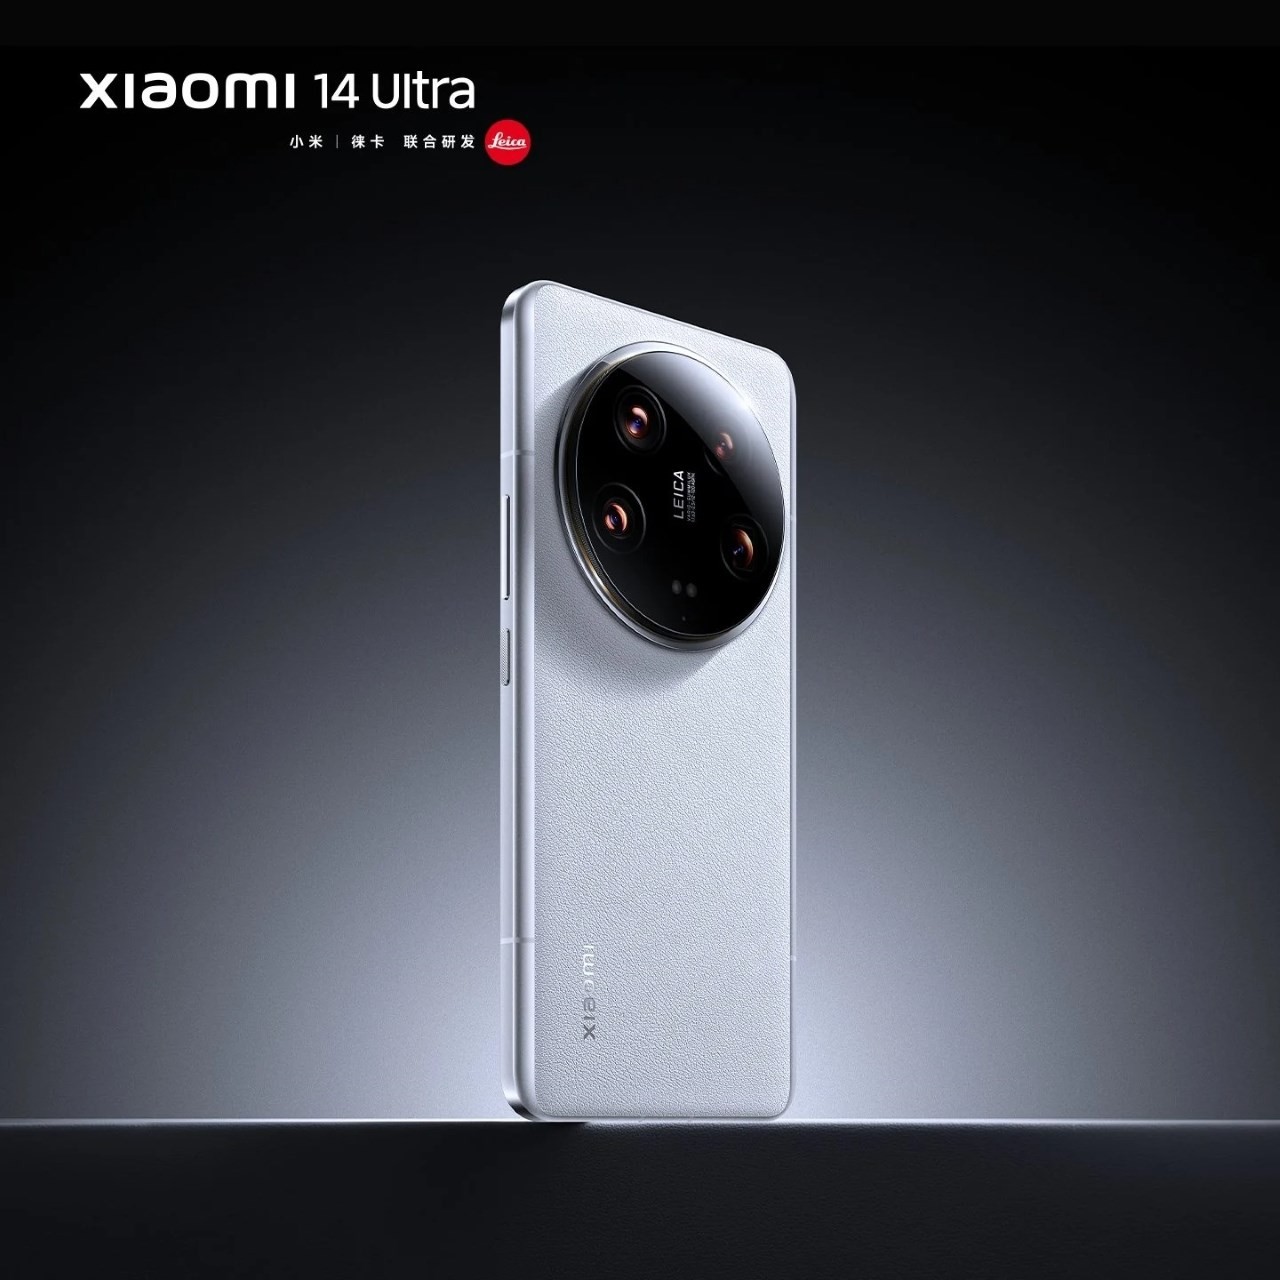 xiaomi-14-ultra-white-3-1280x1280-1708262035.jpg